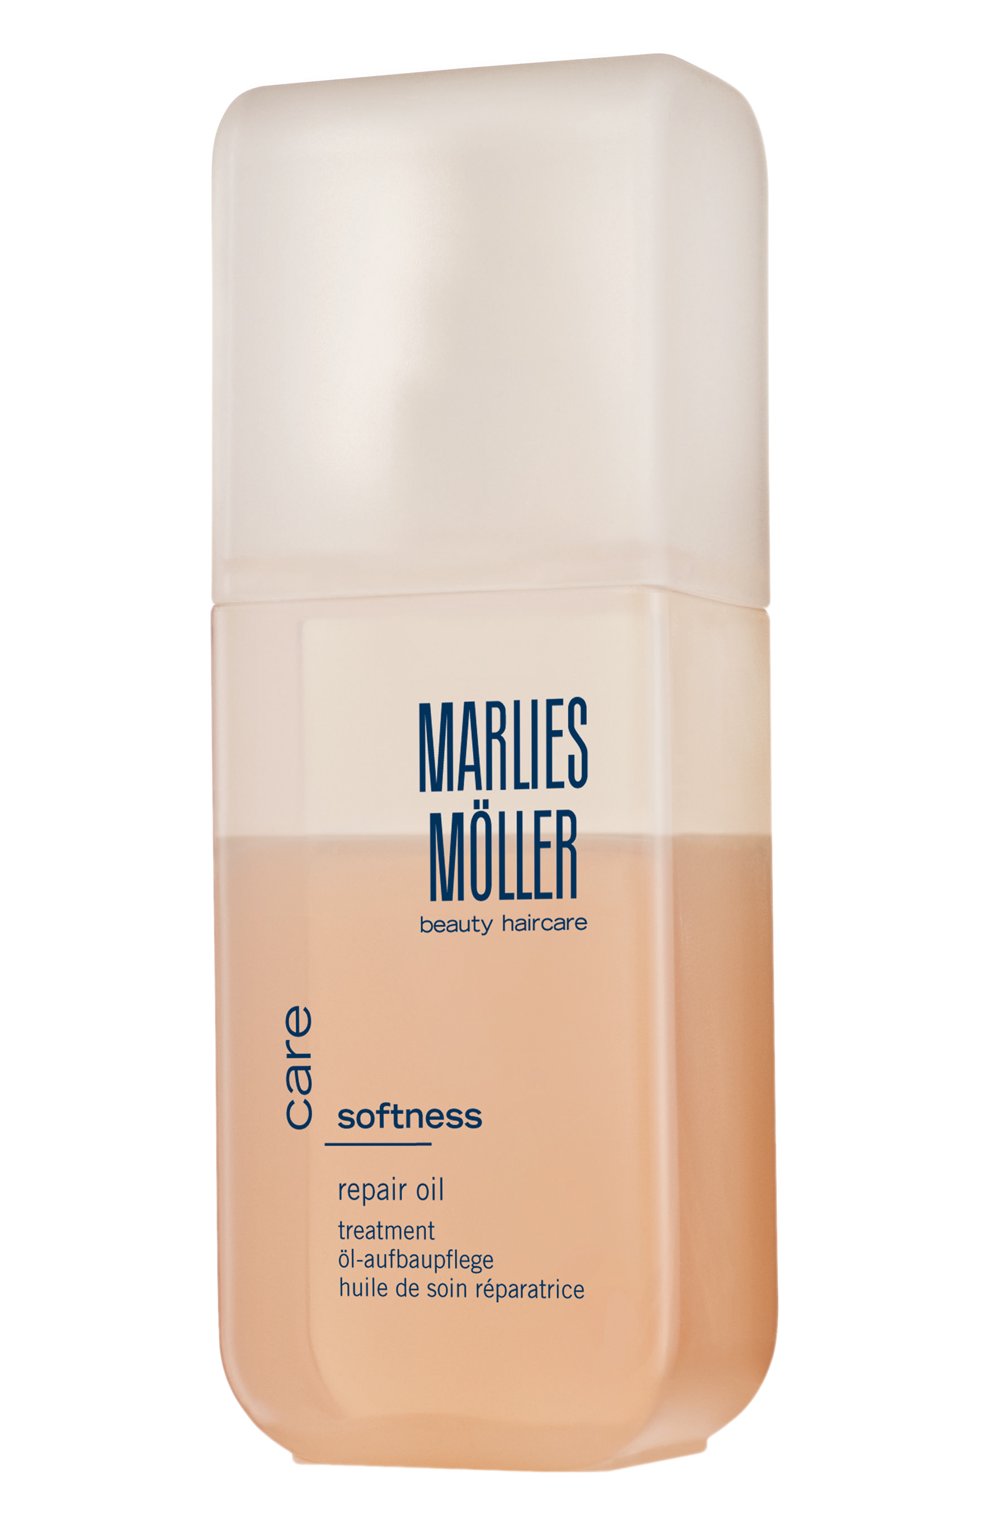 Маска marlies moller softness для гладкости волос интенсивная 125 мл